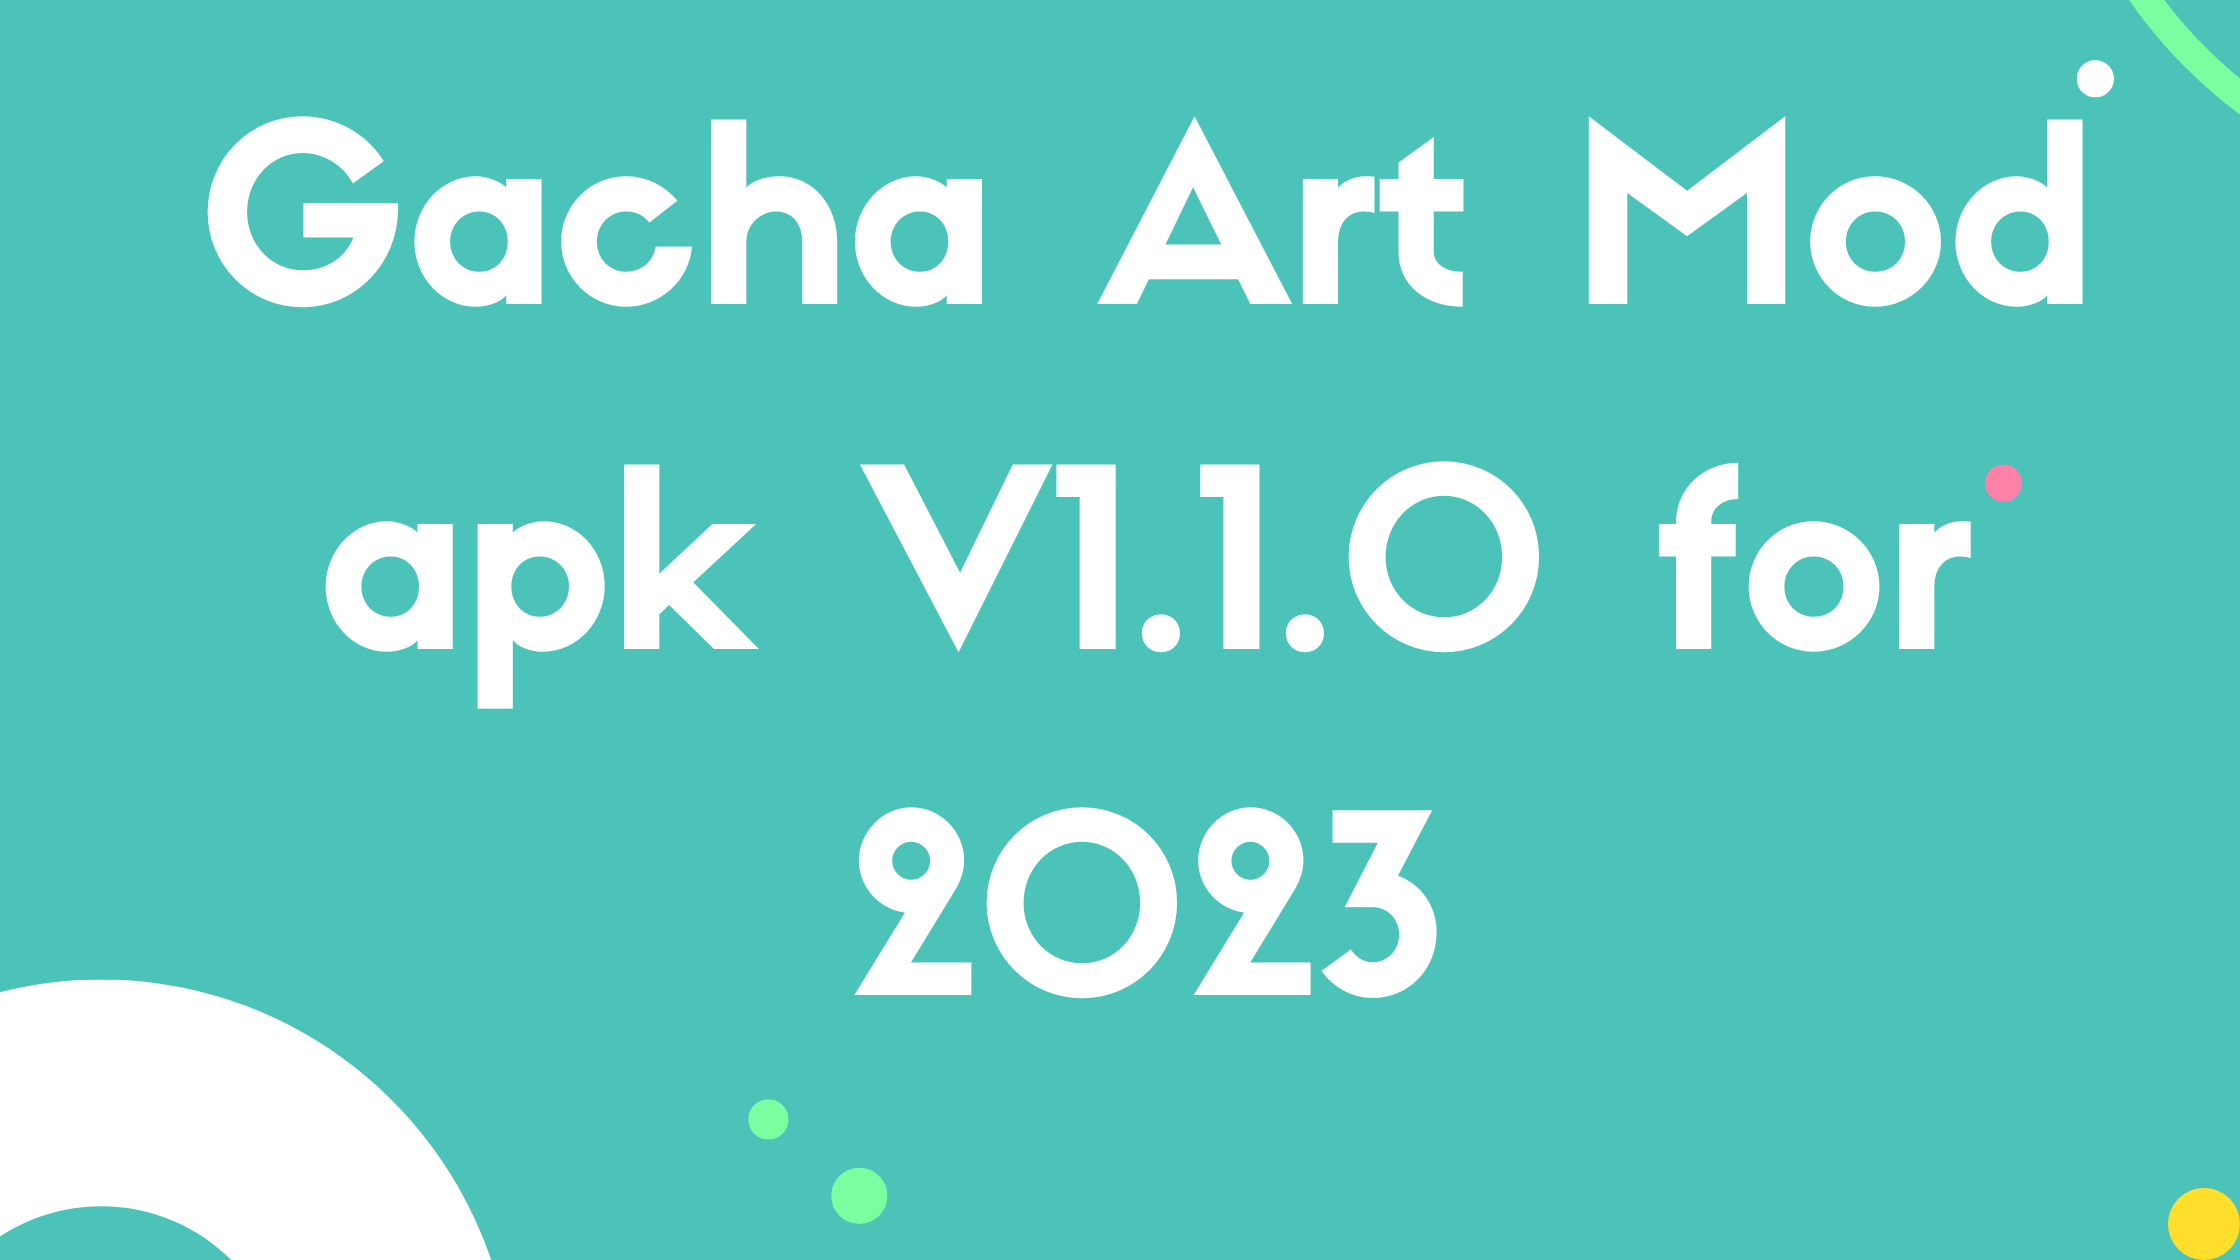 Gacha Art Mod apk V1.1.0 for 2023